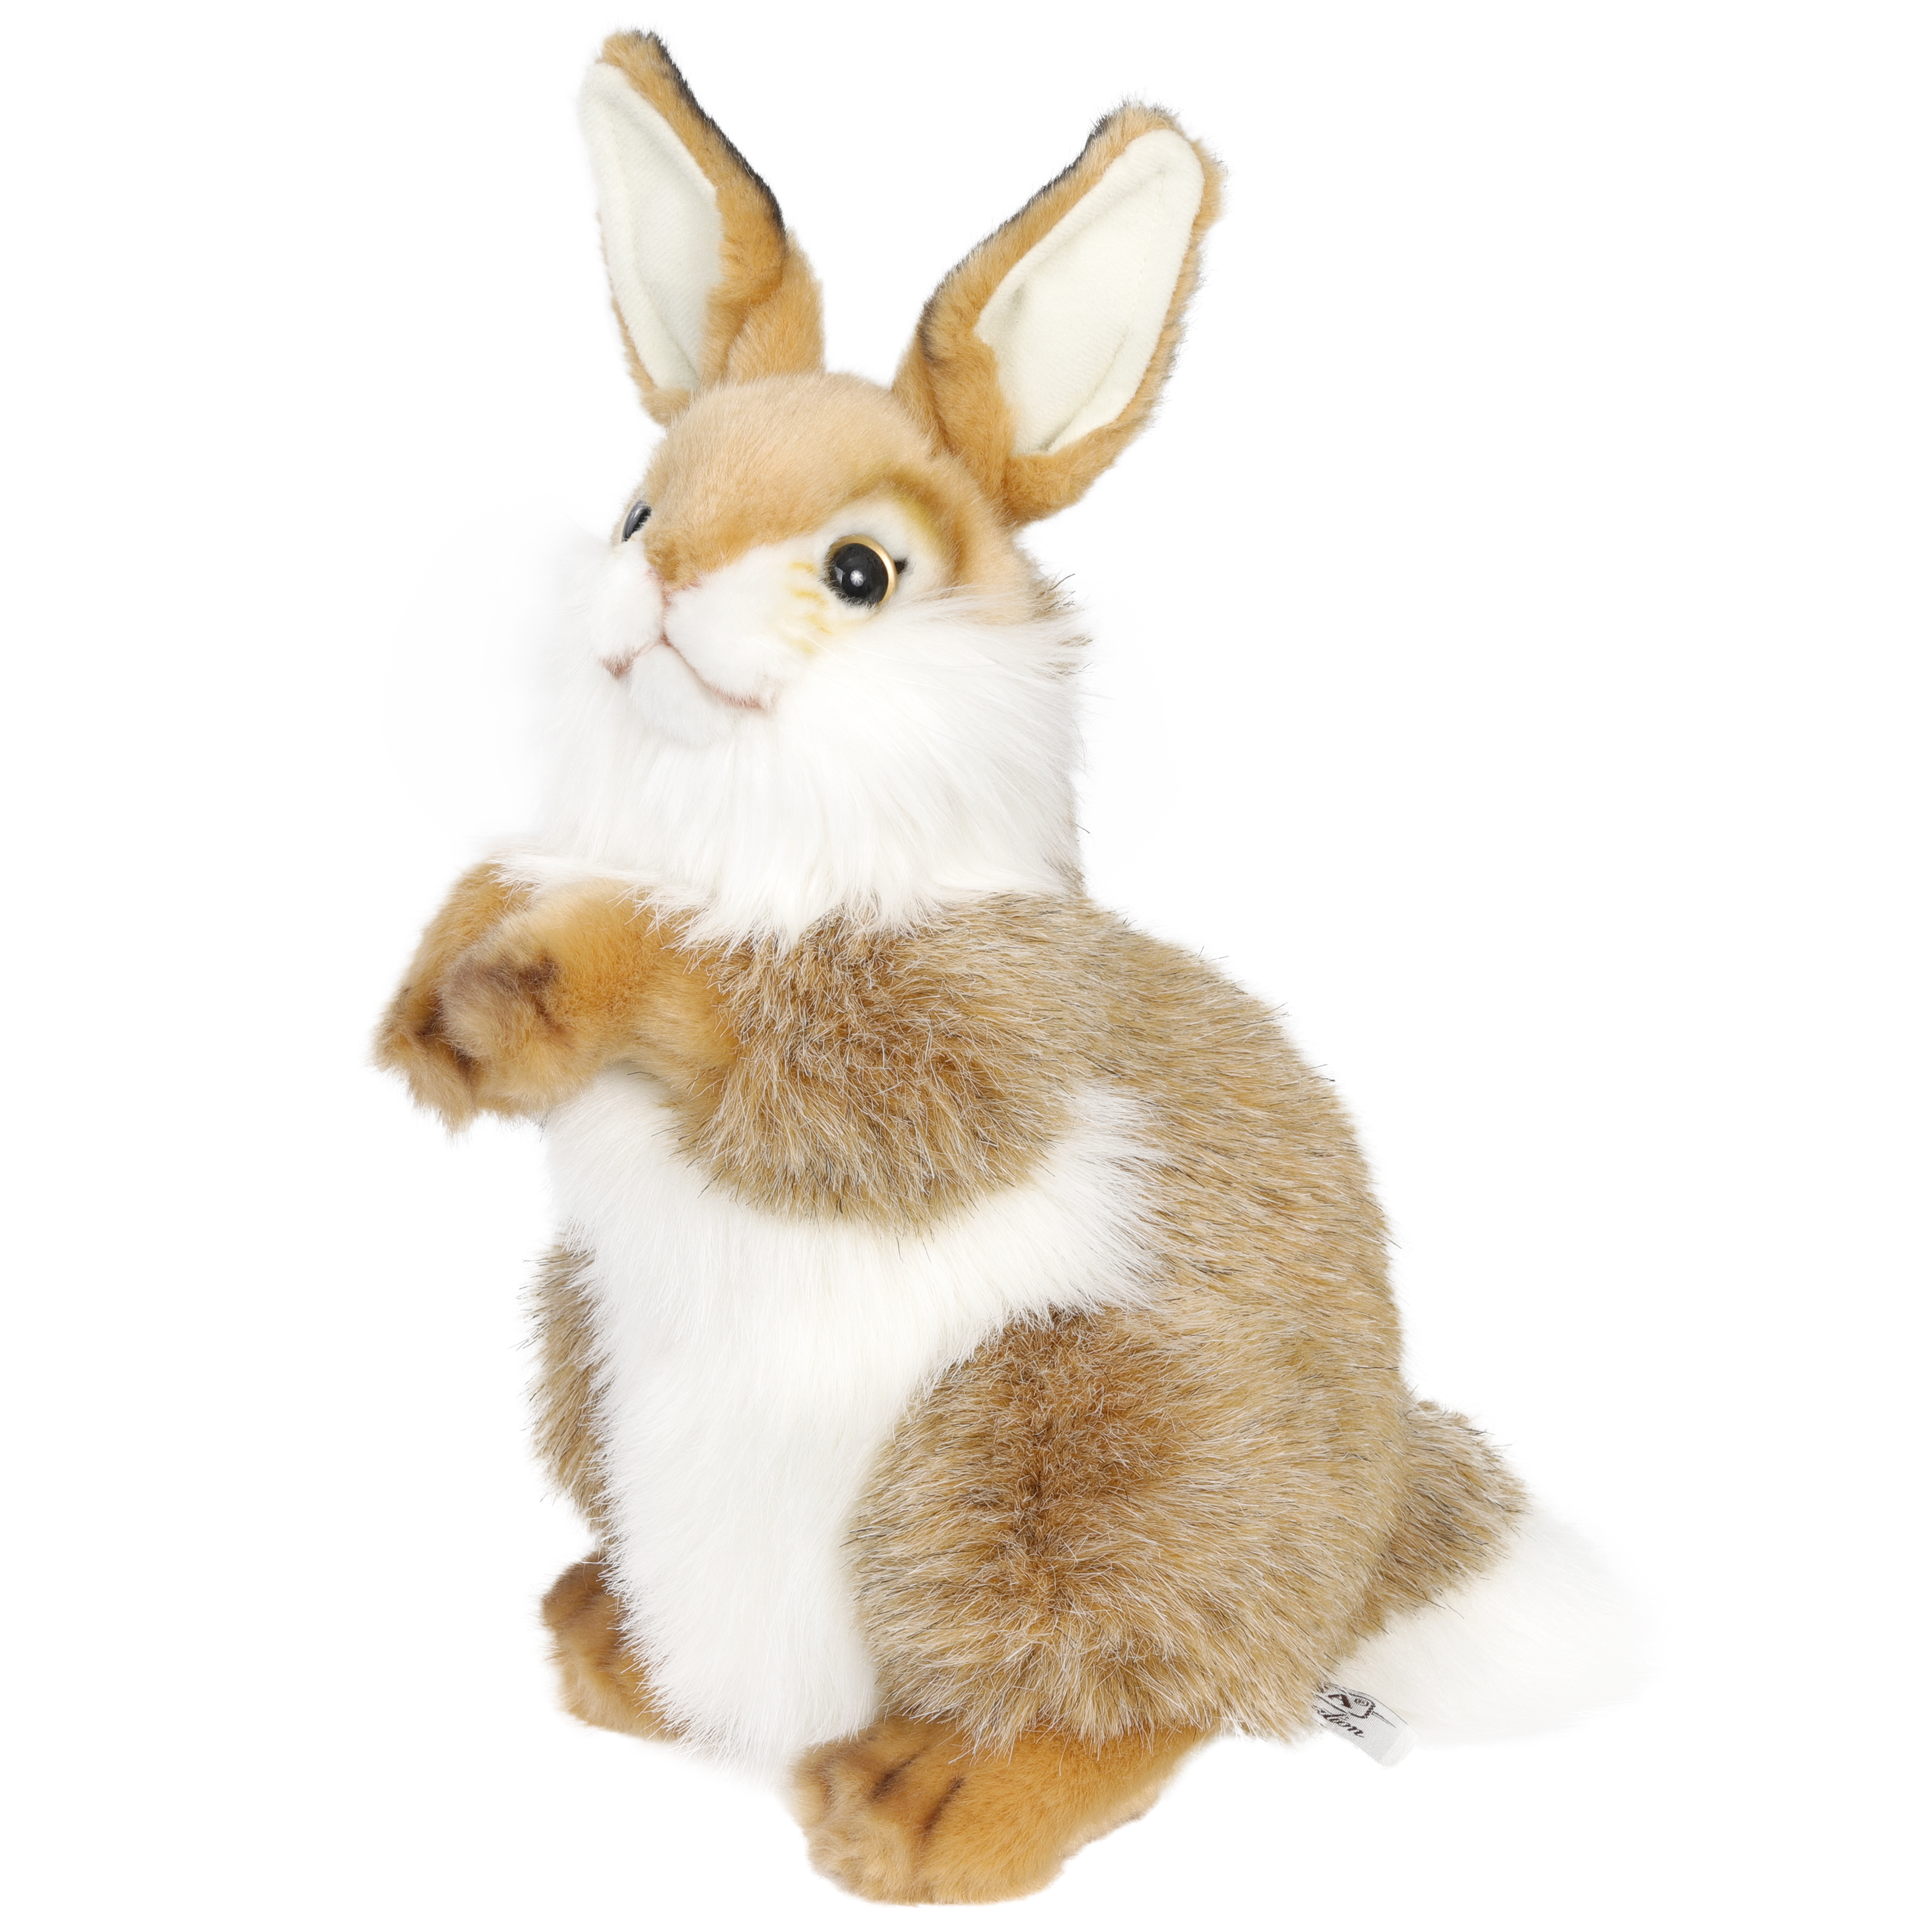 Реалистичная мягкая игрушка Hansa Creation Кролик, 30 см реалистичная мягкая игрушка hansa creation кролик 23 см